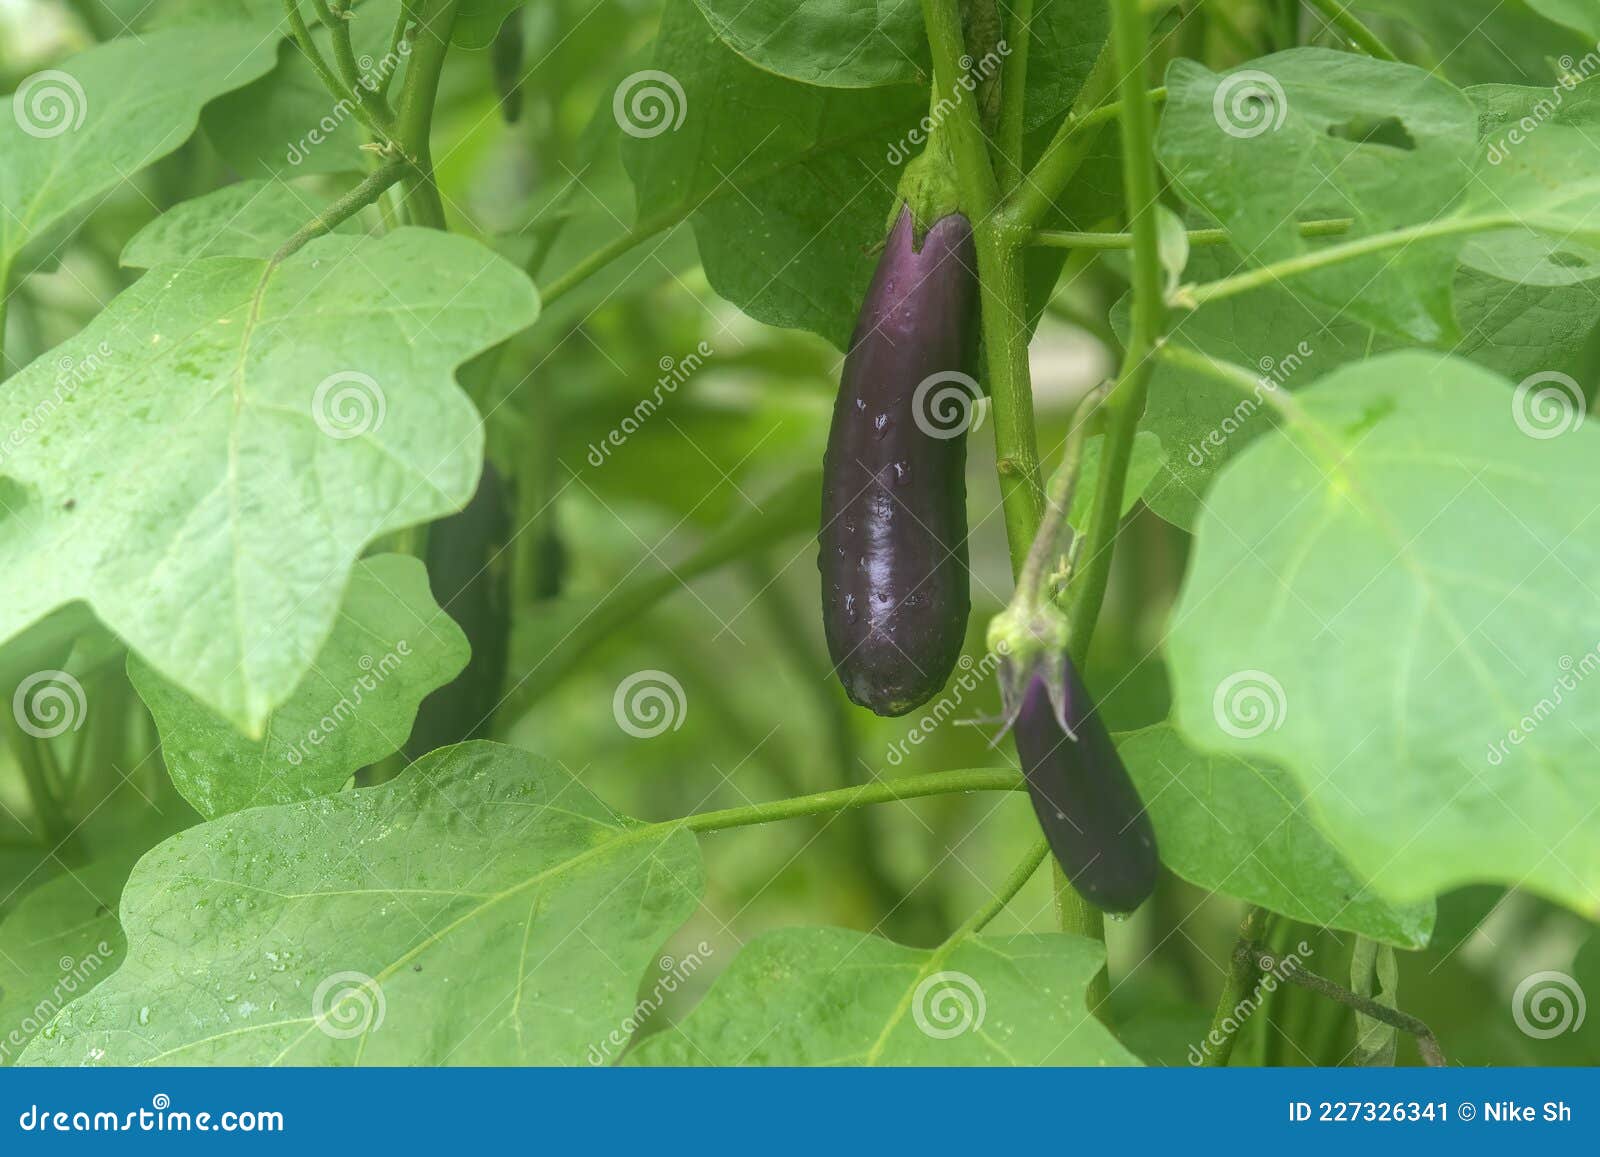 紫色蔬菜之王！各種茄子的特點與料理方式